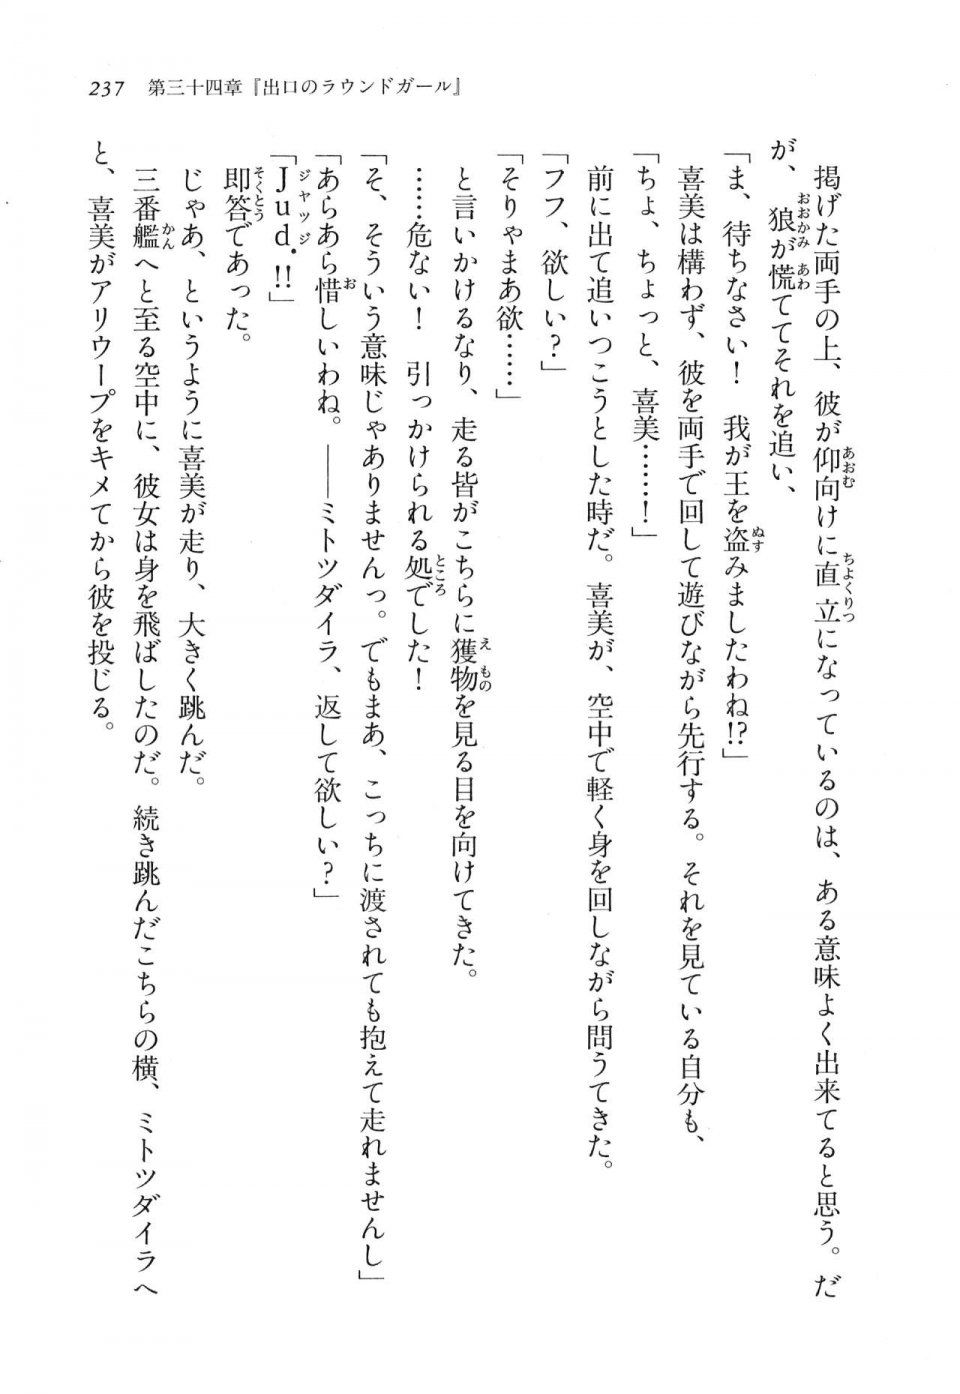 Kyoukai Senjou no Horizon LN Vol 17(7B) - Photo #237